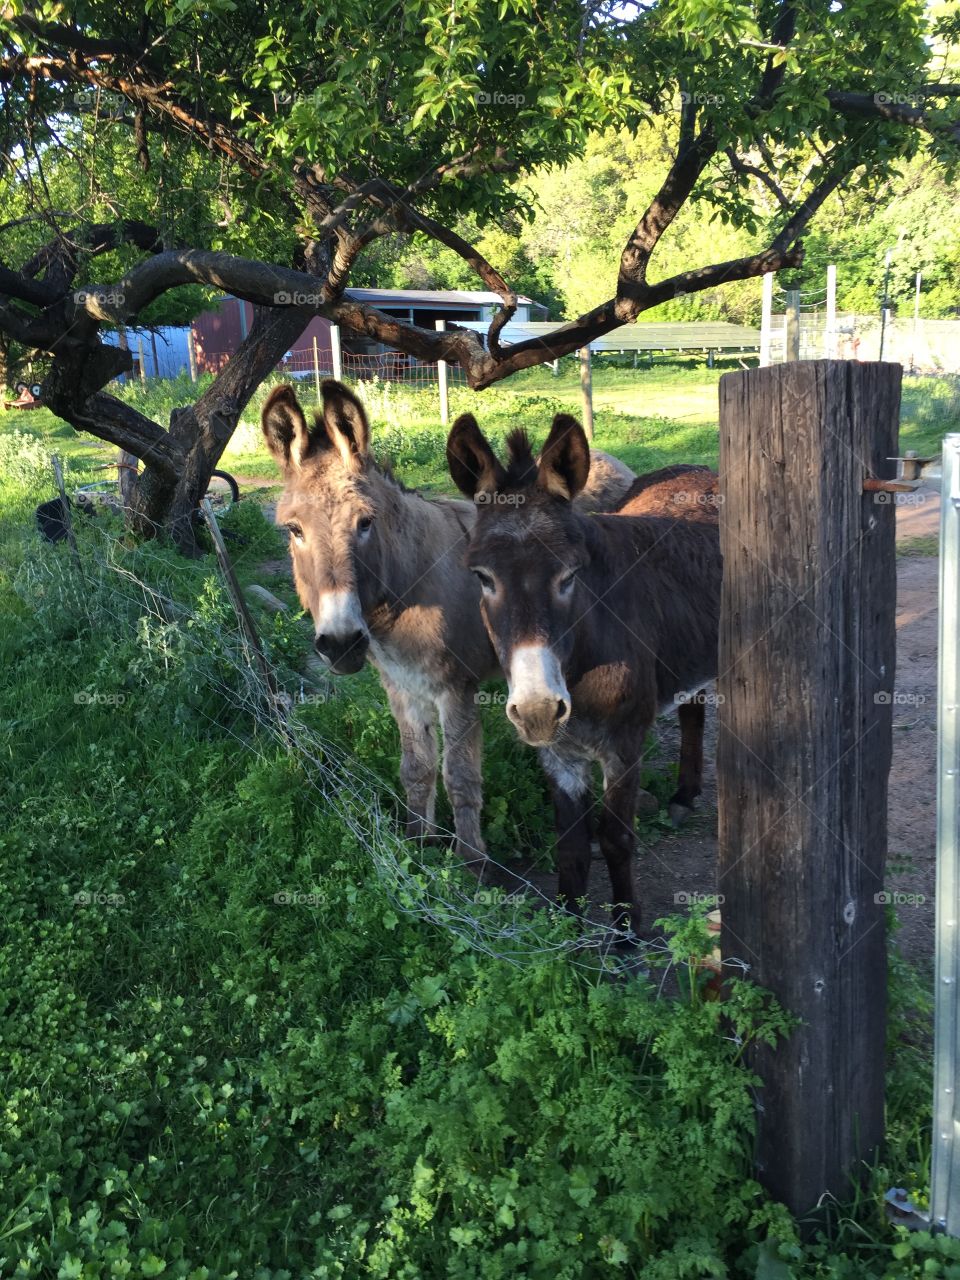 Three hungry donkeys